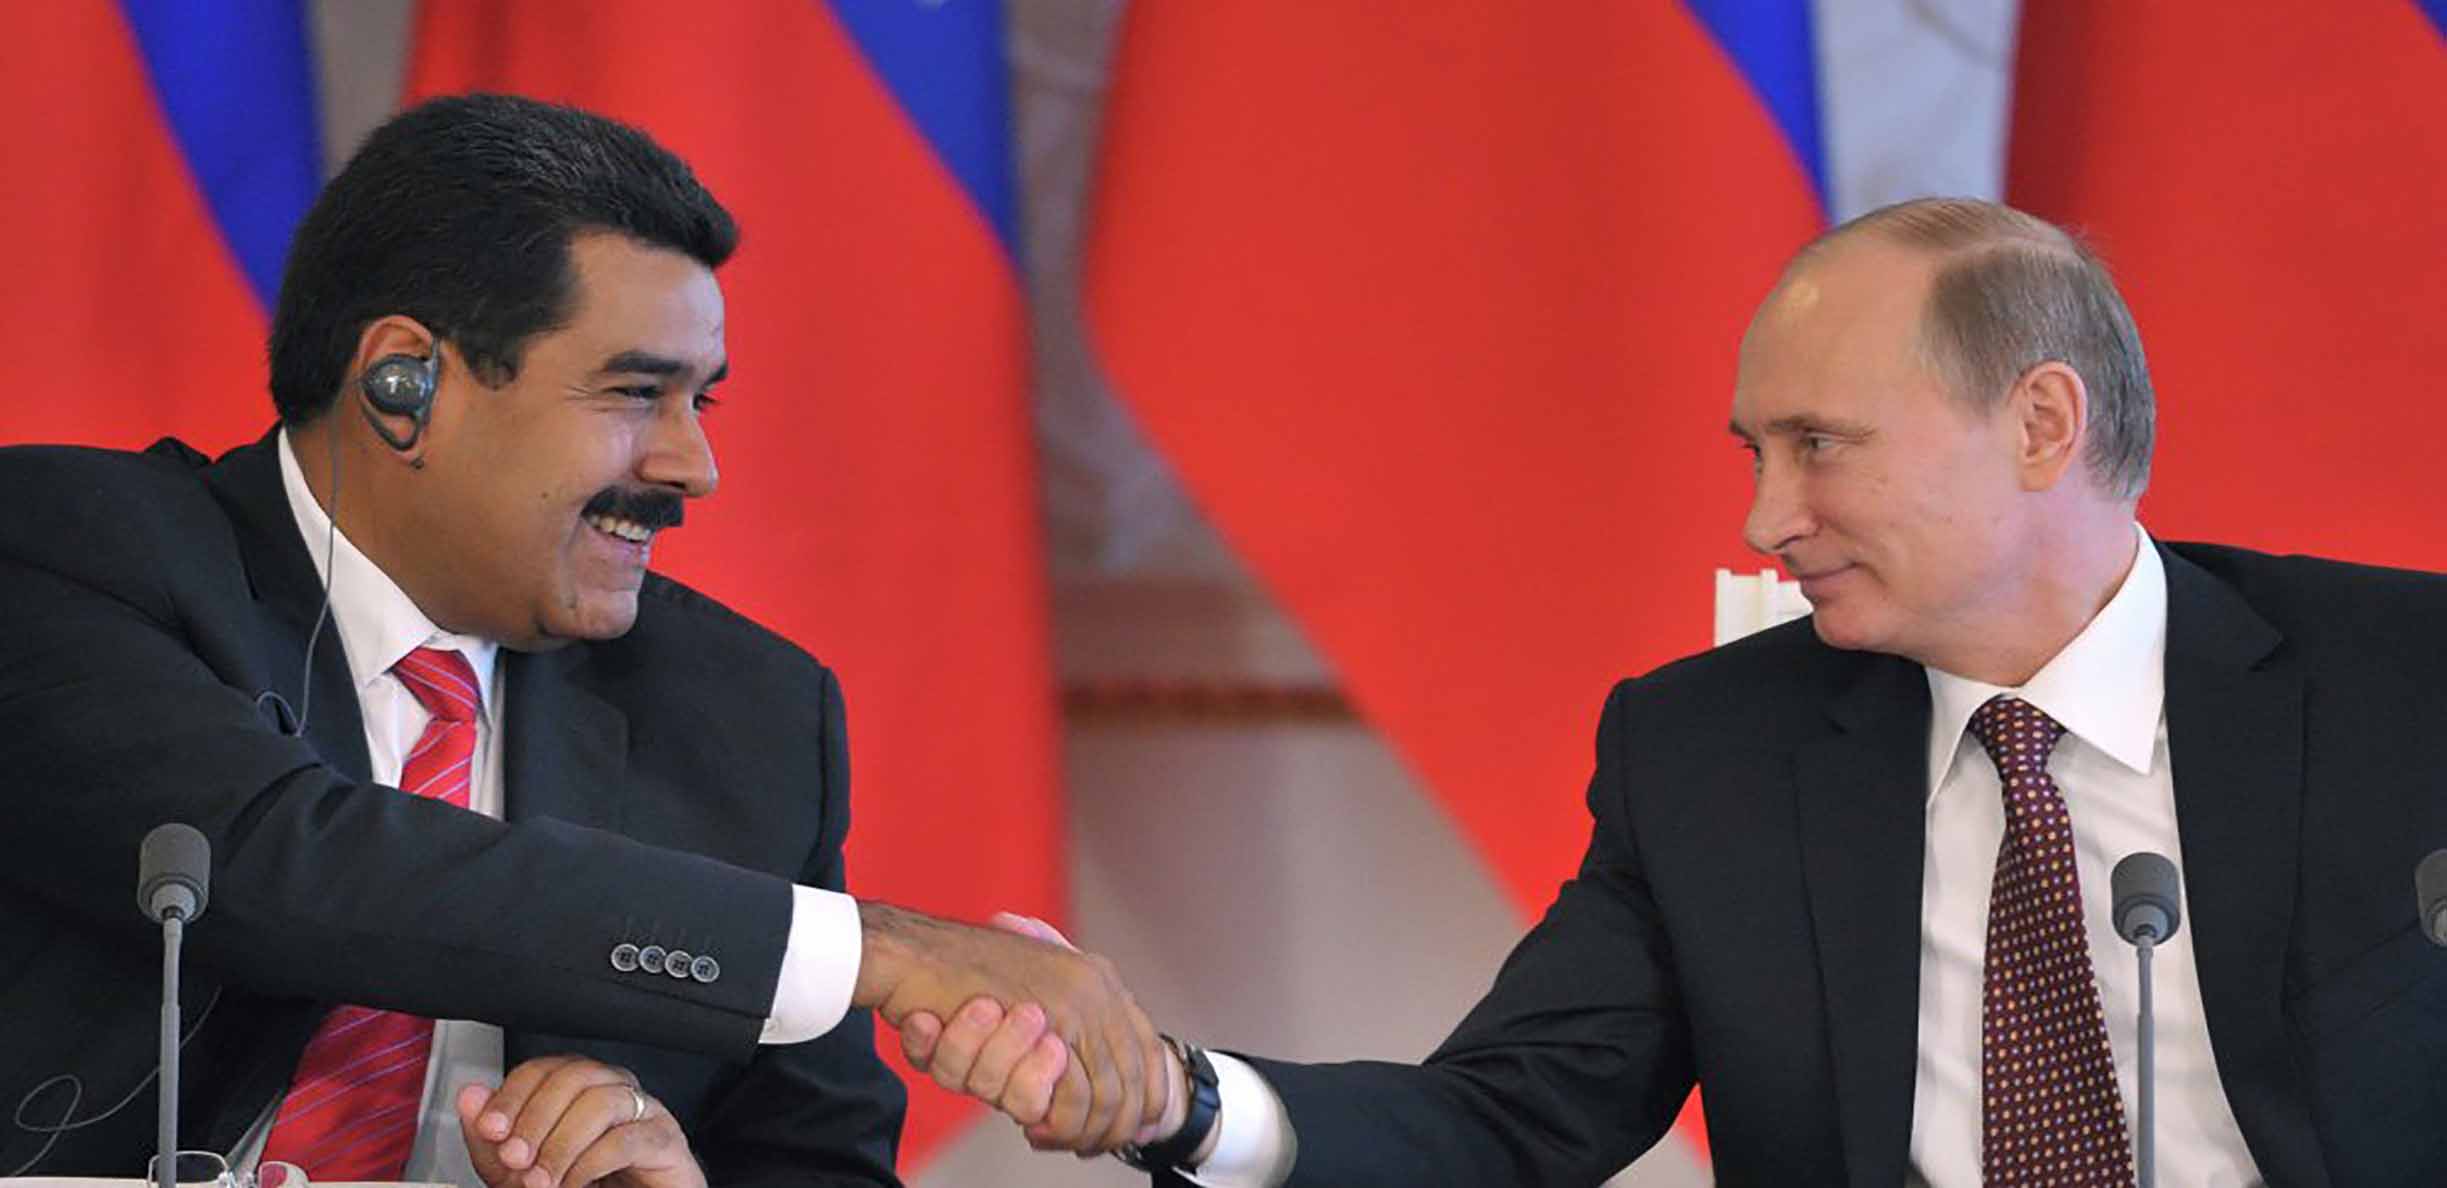 Al Navío: Maduro corre peligro al poner toda su confianza en Rusia y Putin